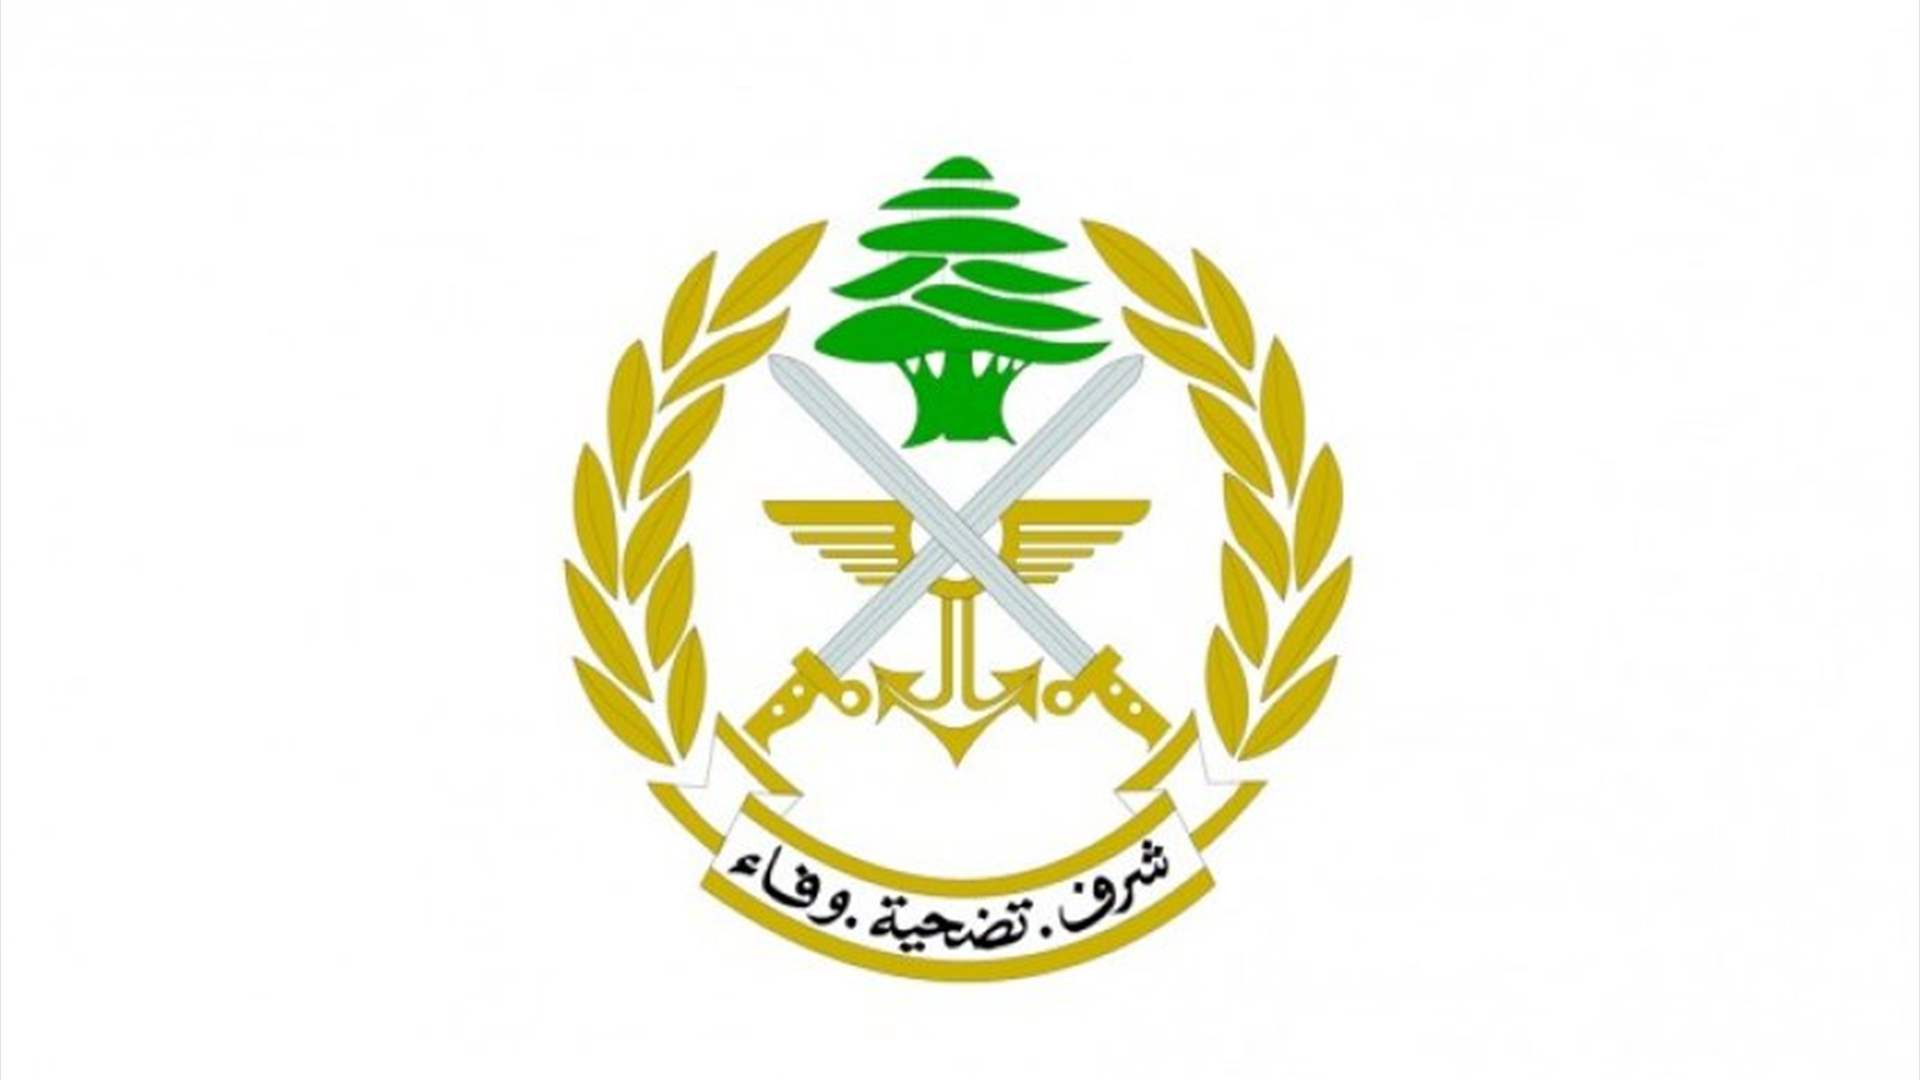 الجيش: توقيف أشخاص في بلدة دير الزهراني – النبطية ومنطقتَي صبرا- مدخل المخيم وجبل البداوي